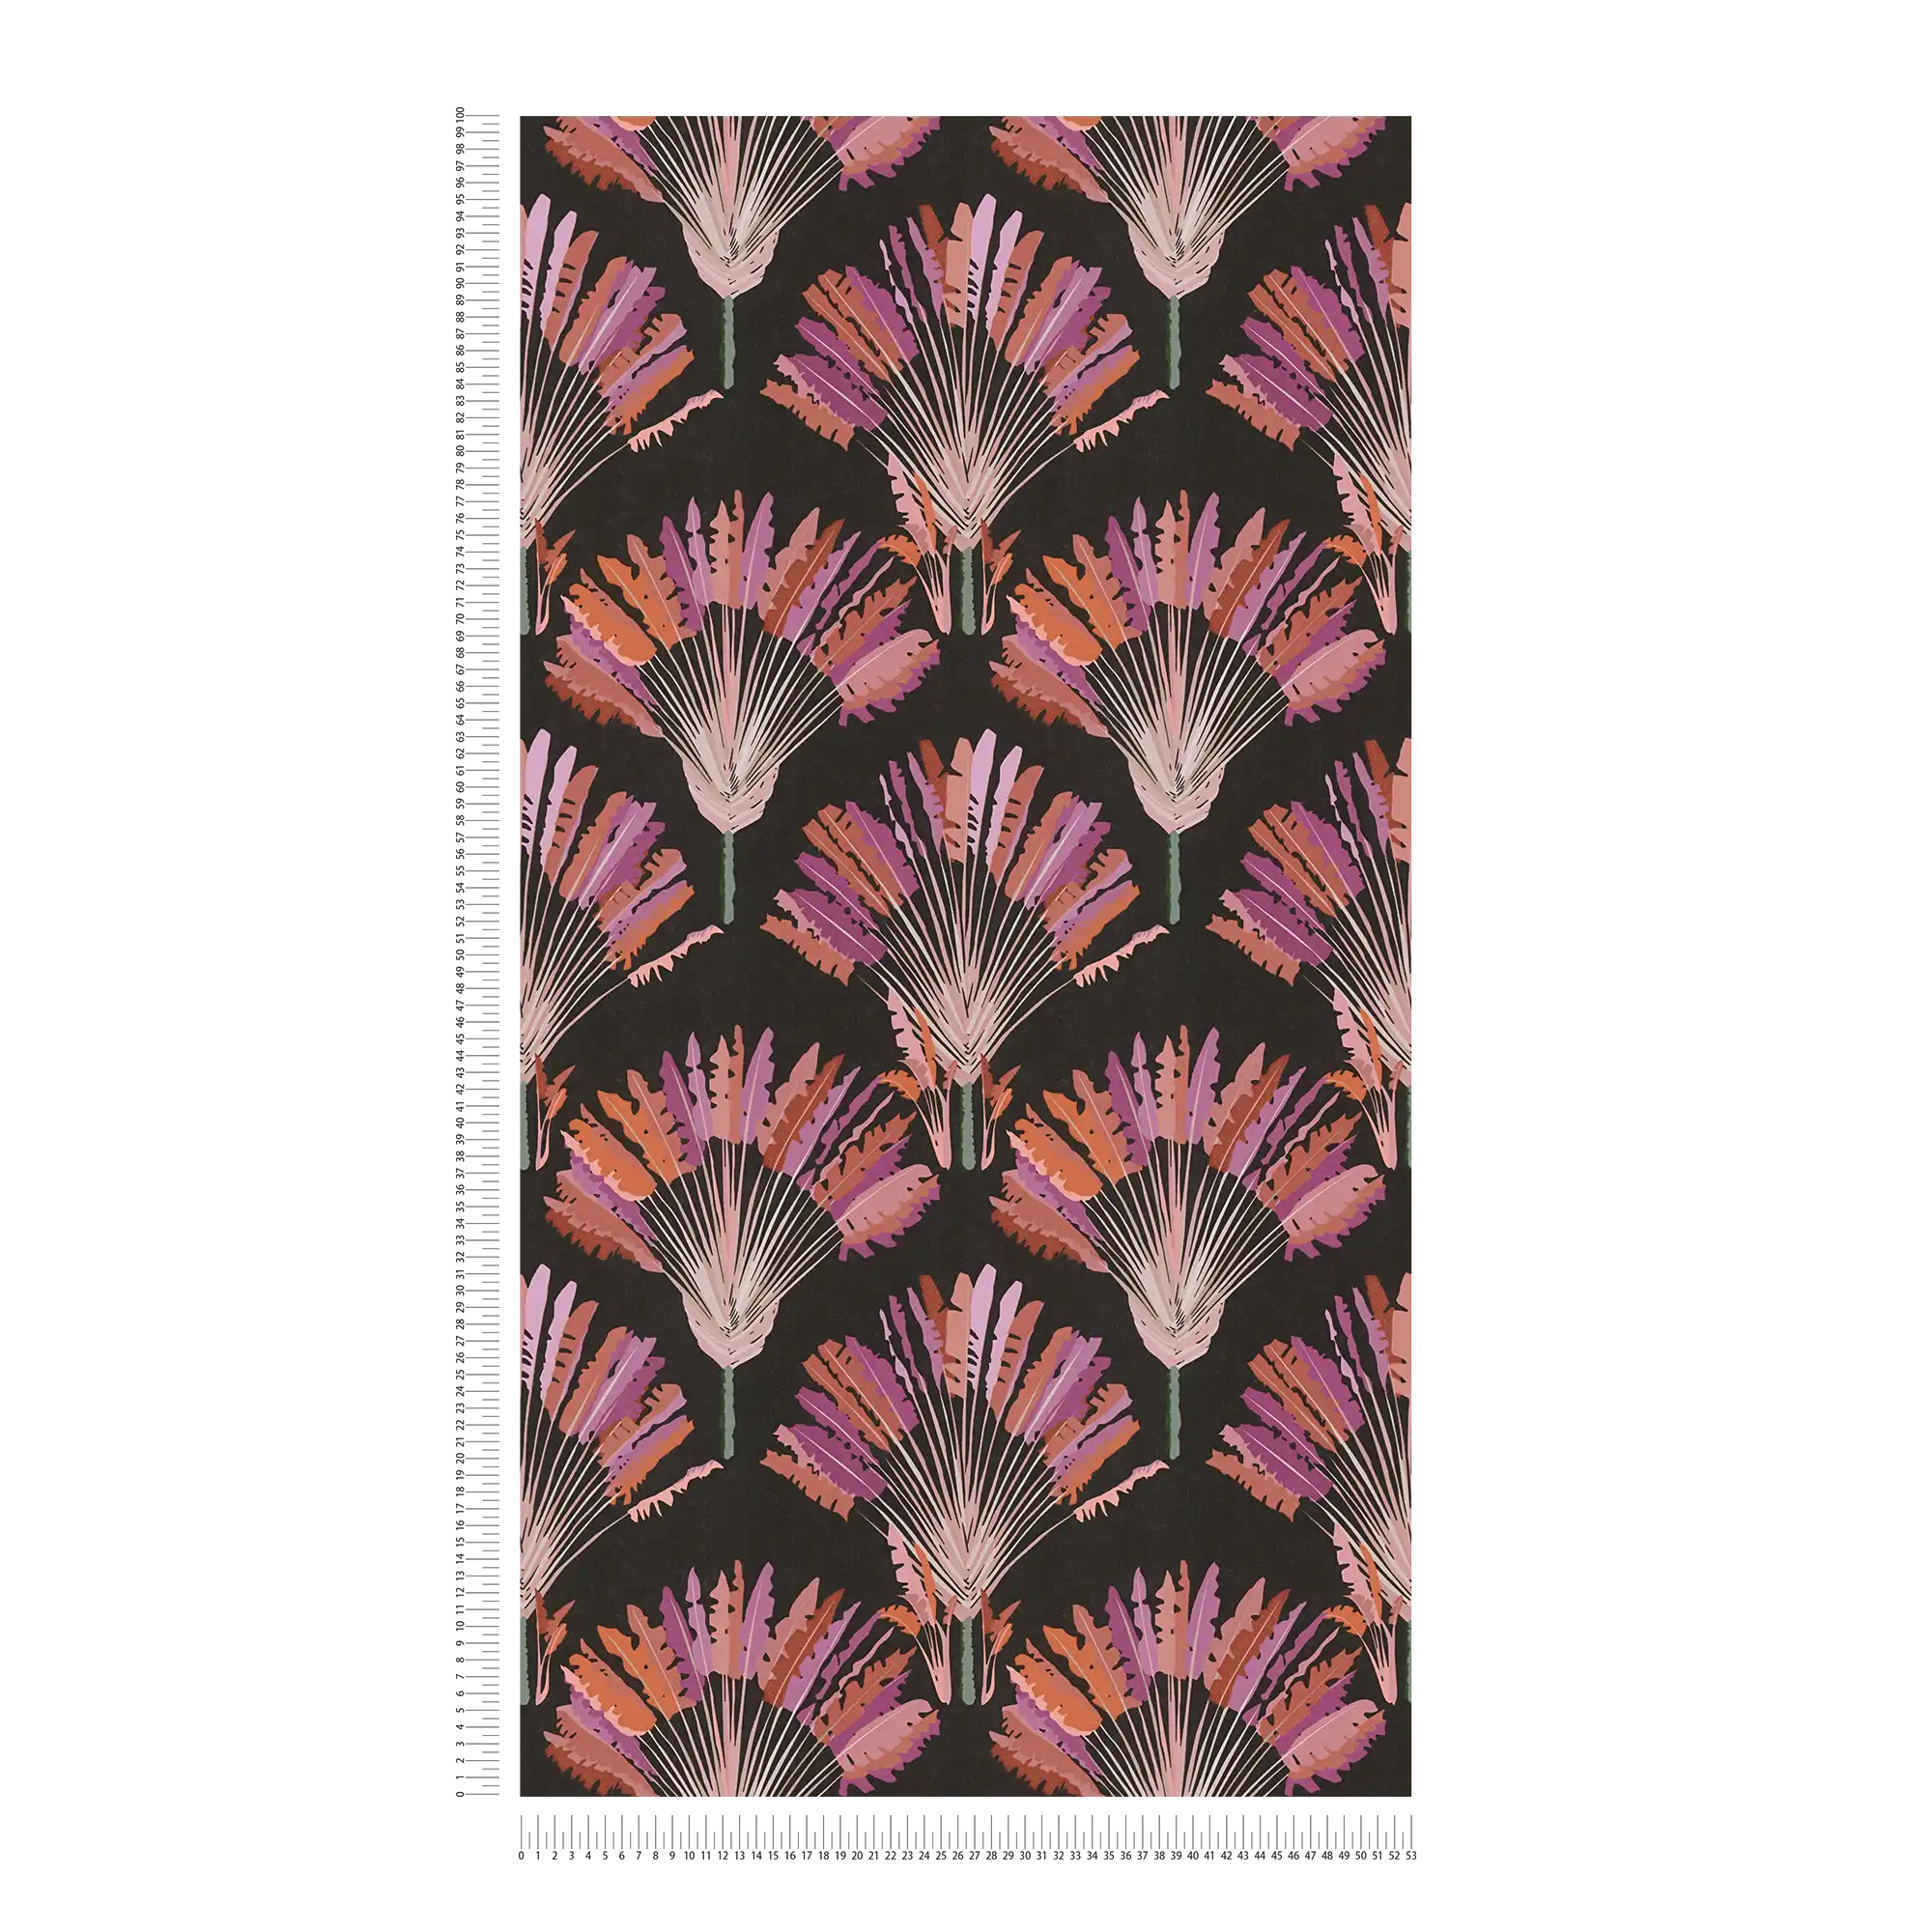             Zwart behang met paars palmmotief
        